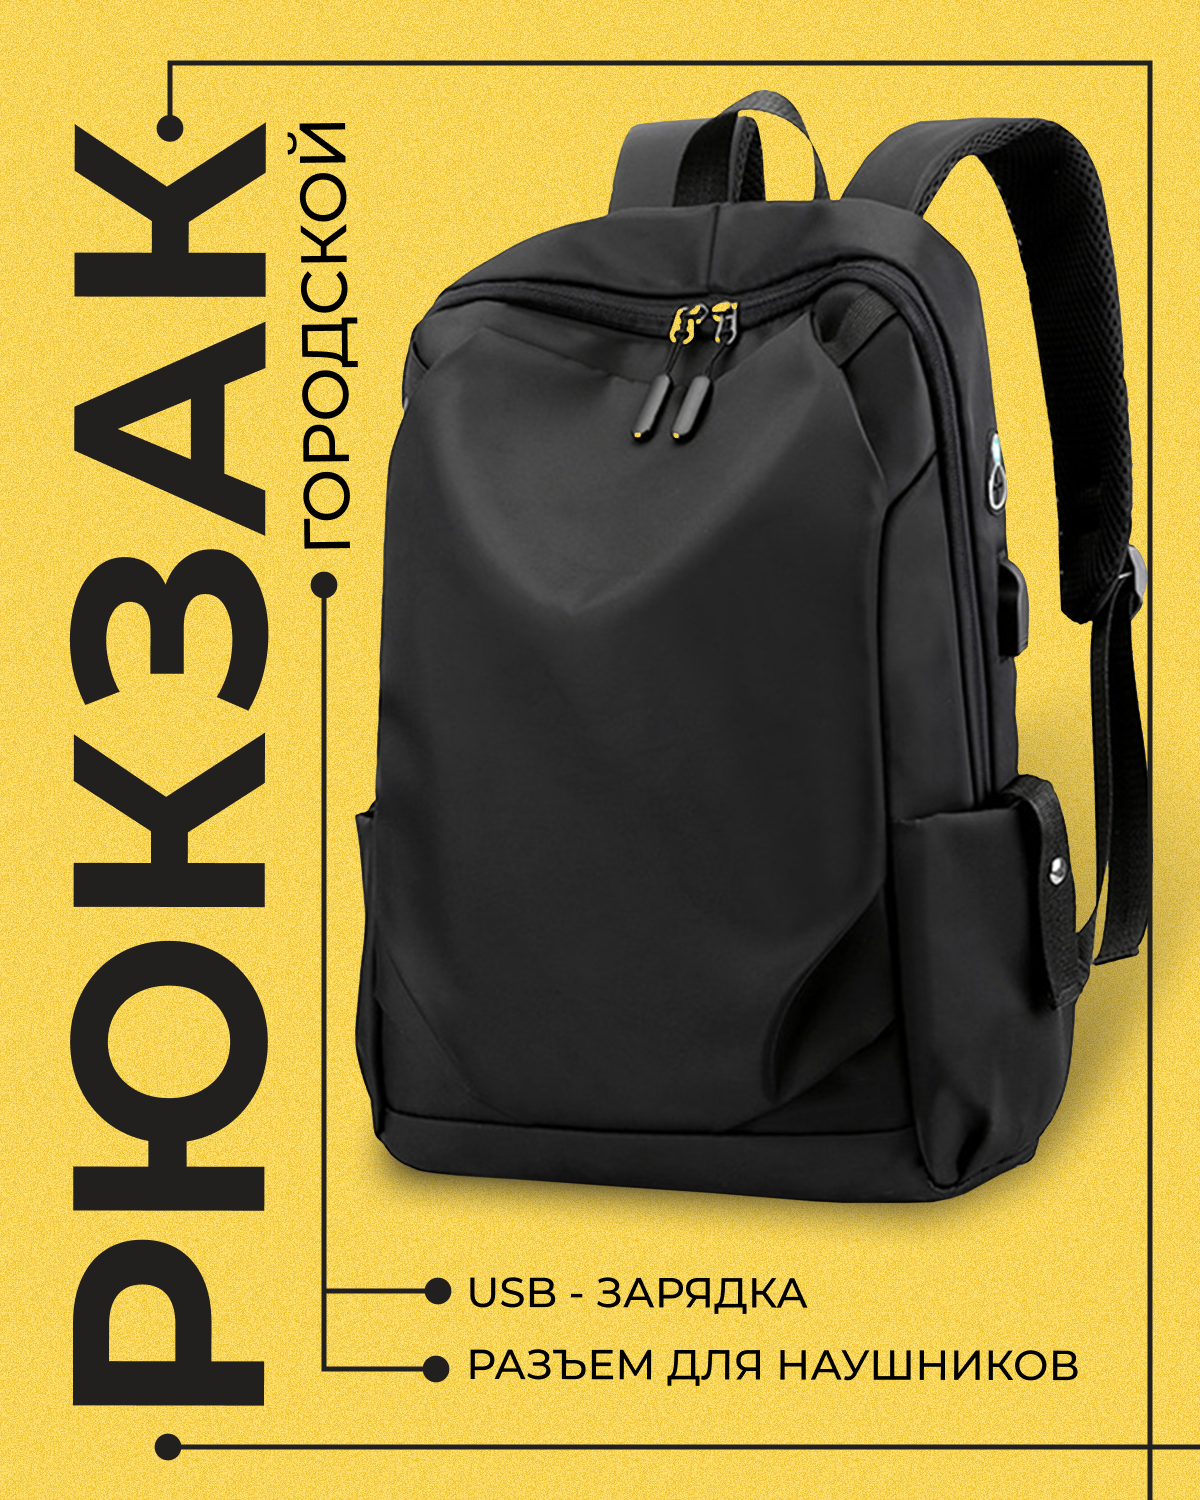 Спортивный рюкзак S-MAX с ремнем для крепления к чемодану, отсеком для ноутбуков диагональю до 16 дюймов и USB портом, черный